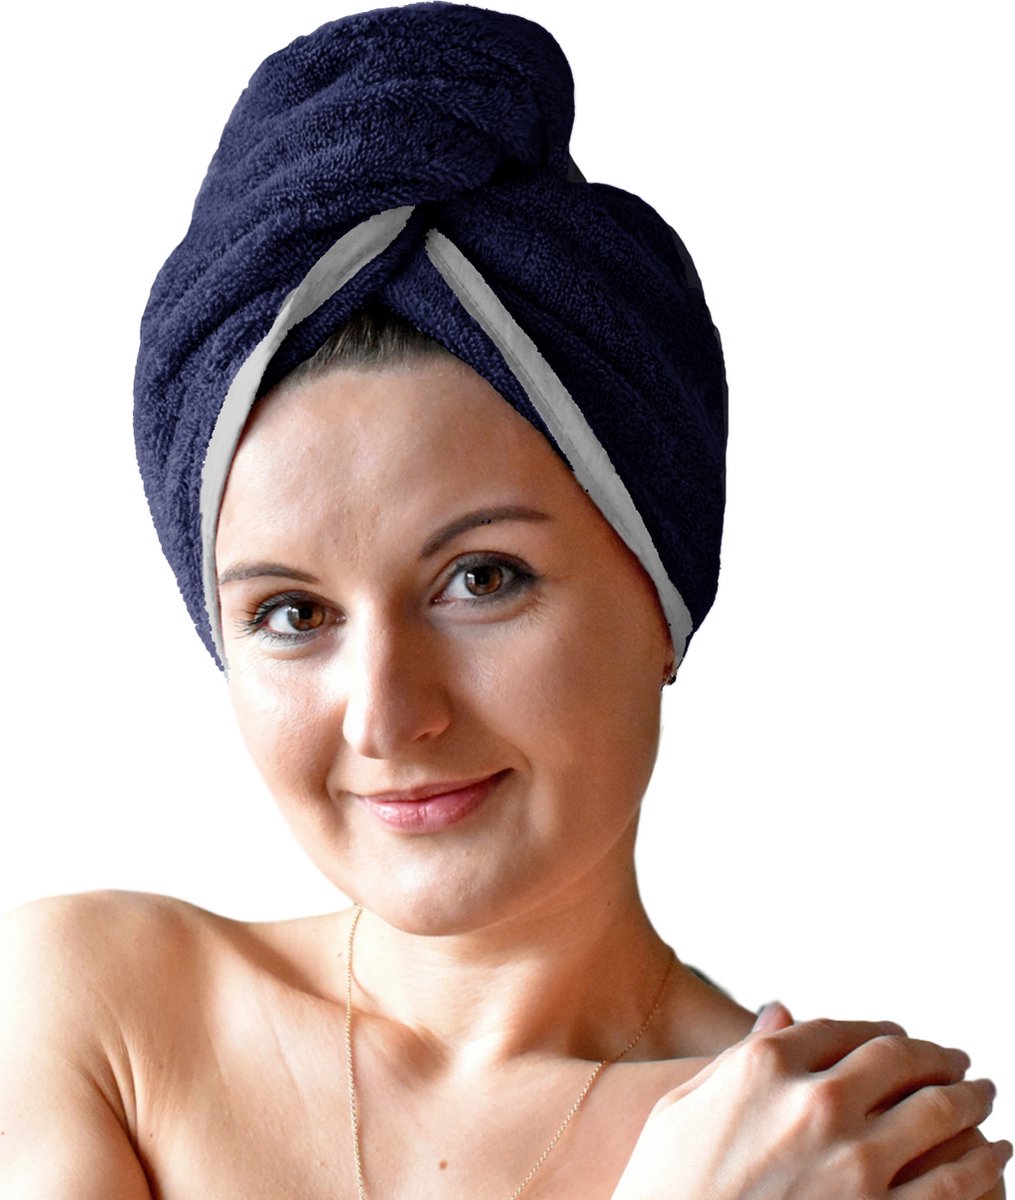 HOMELEVEL Badstof haartulband met knoop voor volwassenen gemaakt van 100% katoen, absorberend, stabiele grip - Aantal 1 - Donkerblauw